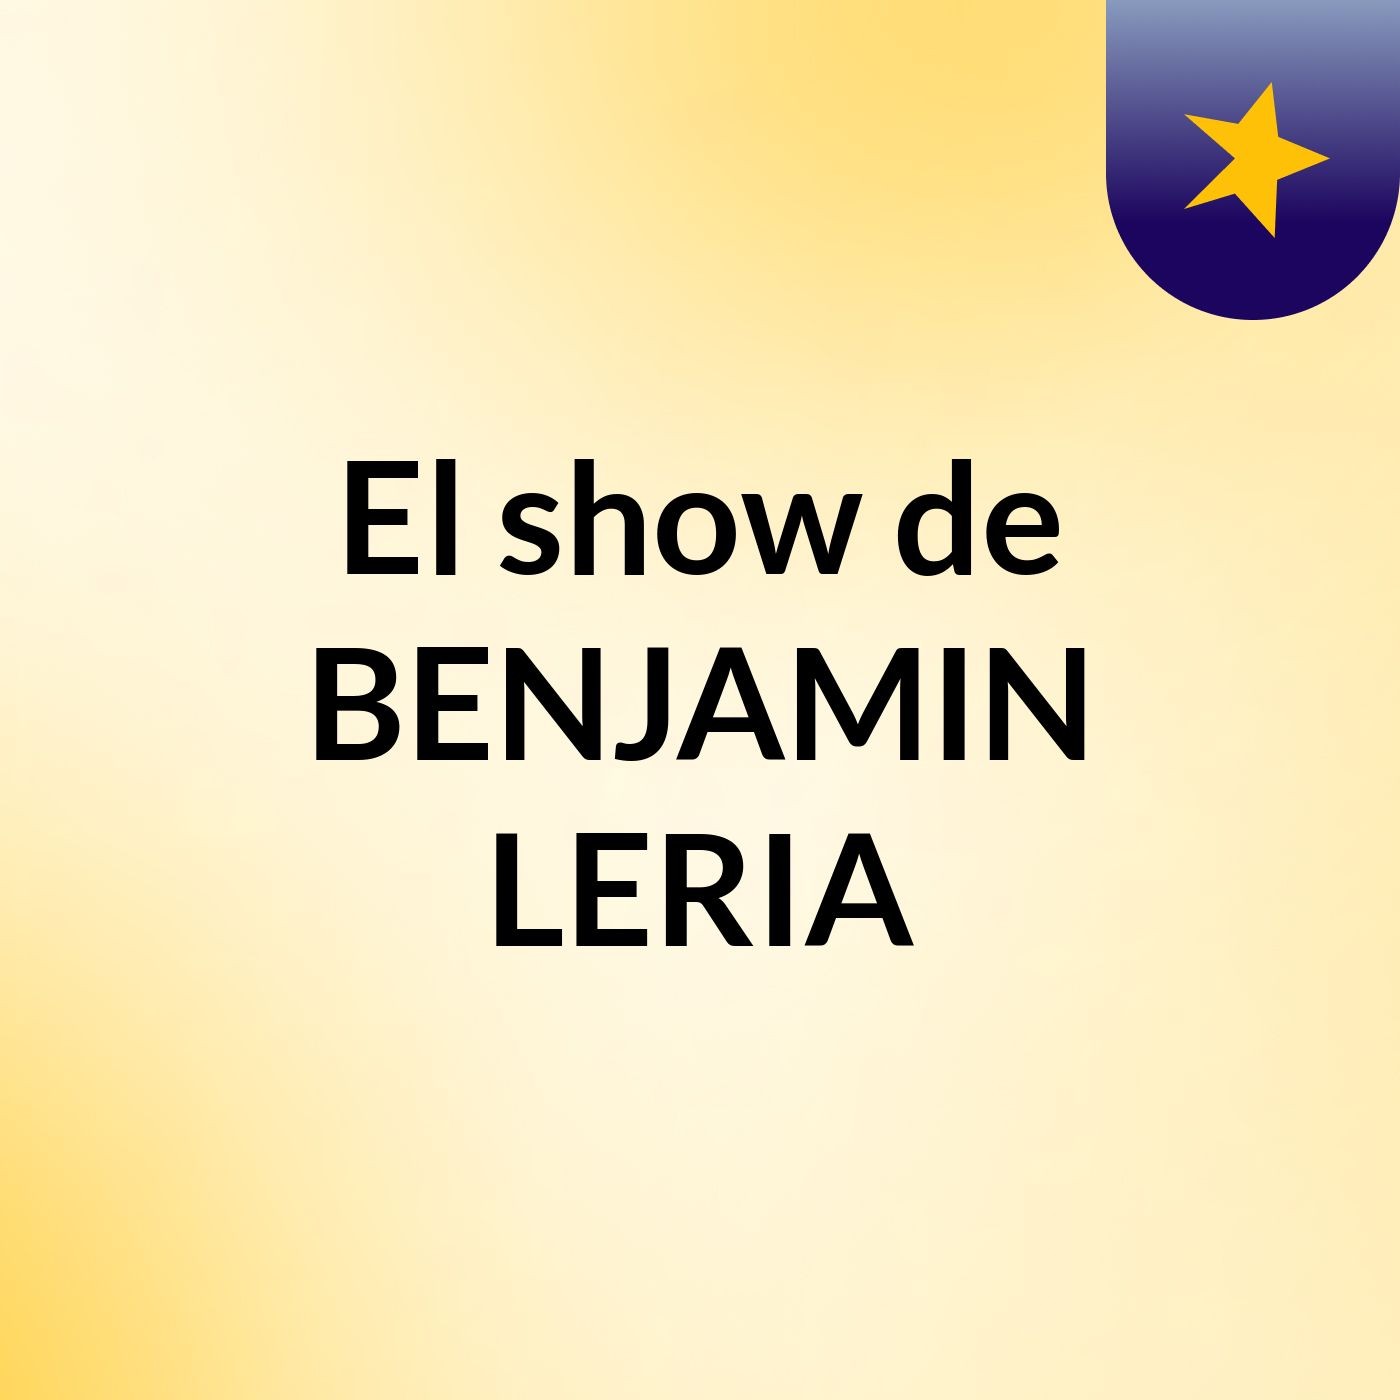 Episodio 6 - El show de BENJAMIN LERIA